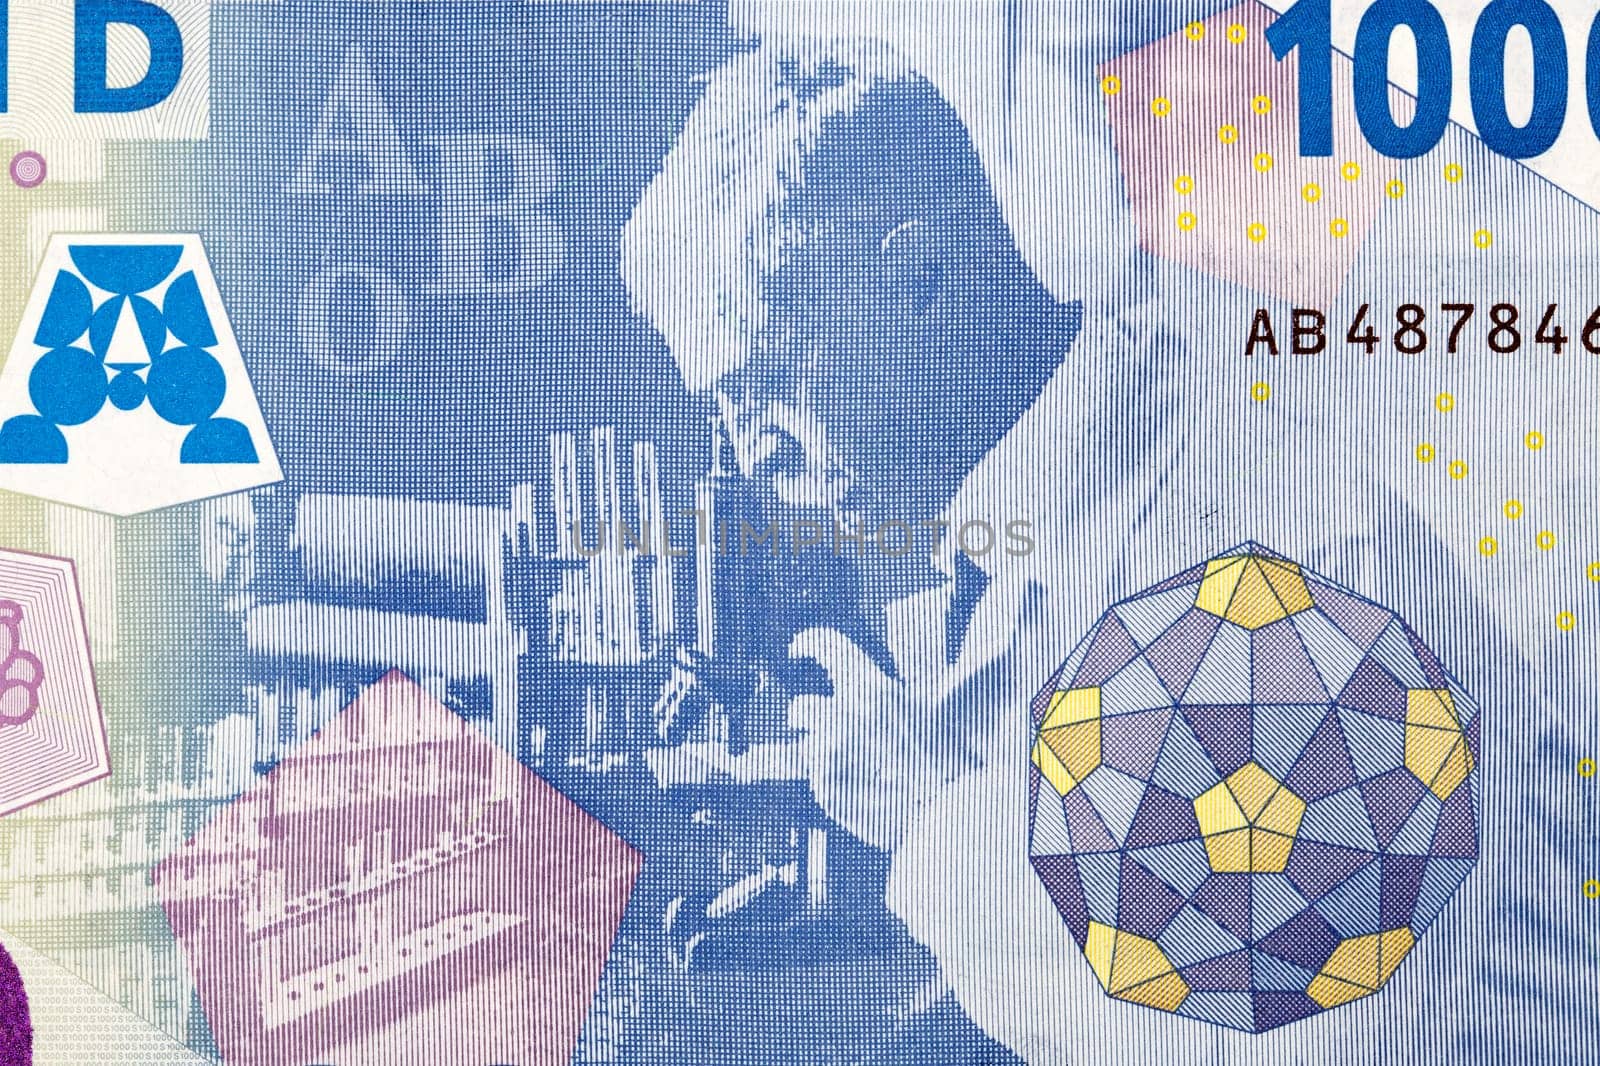 Karl Landsteiner working in his laboratory in Licenter from money